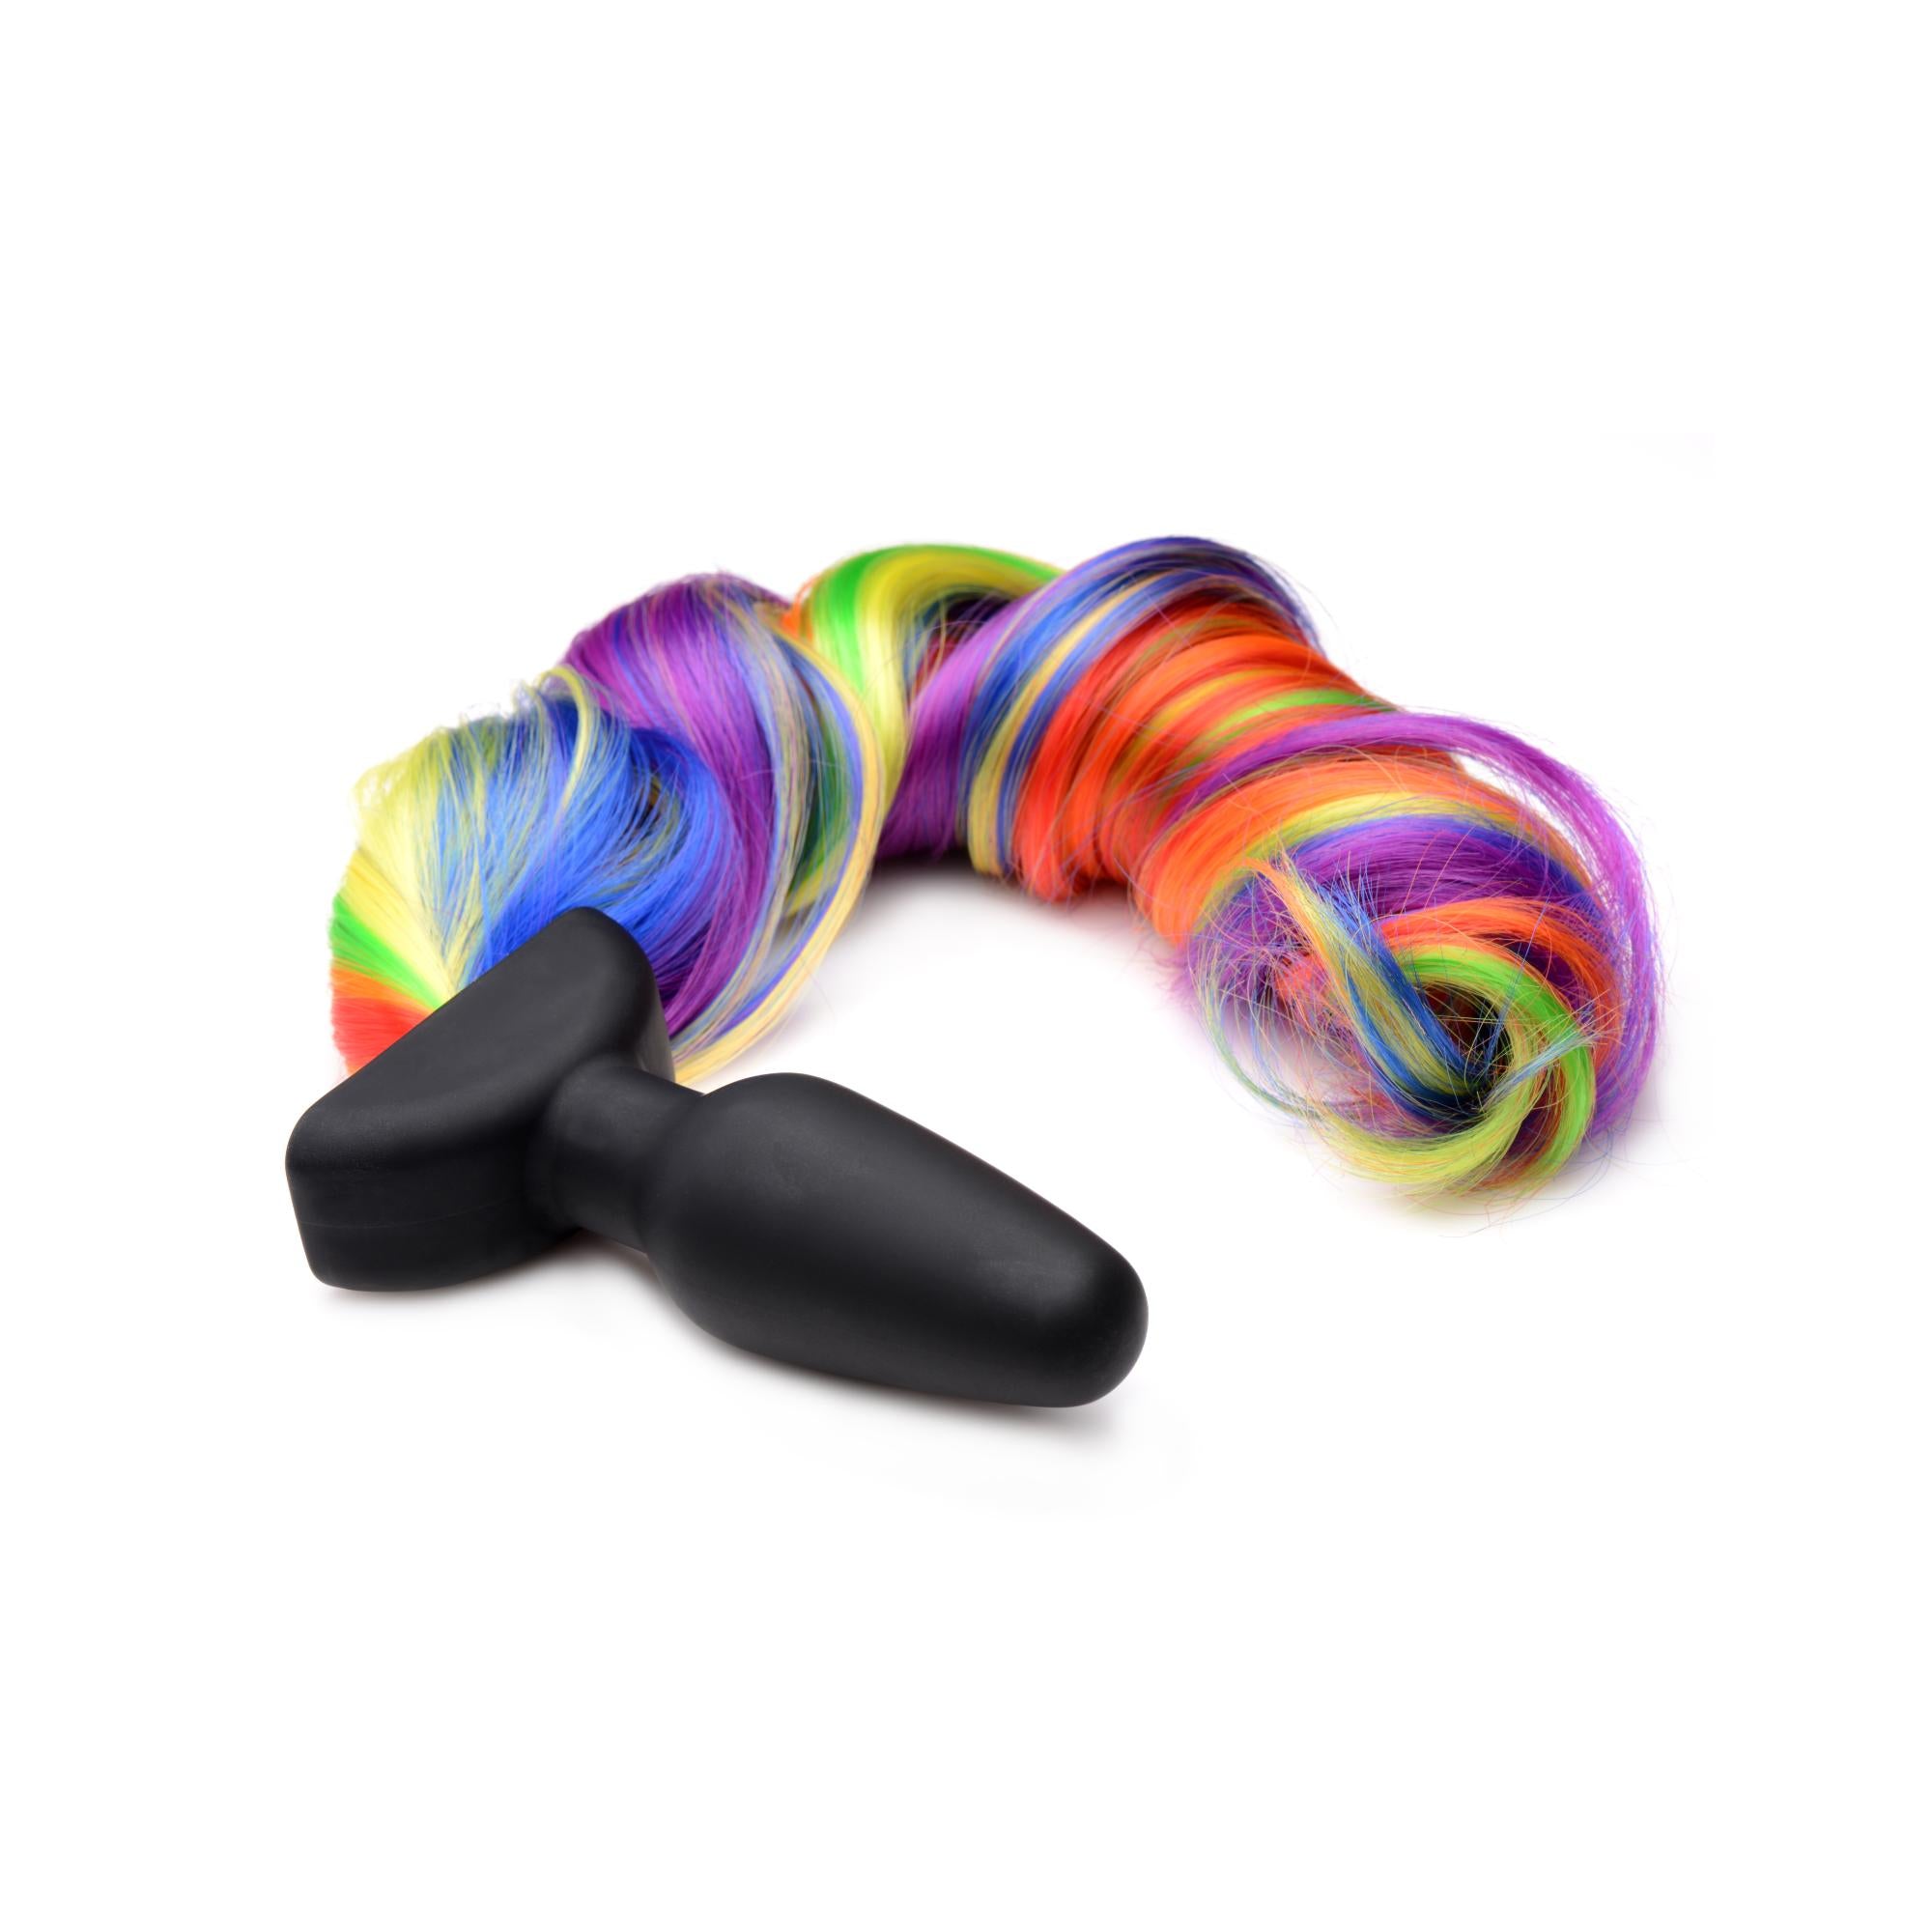 Tailz Vibrating Rainbow Tail